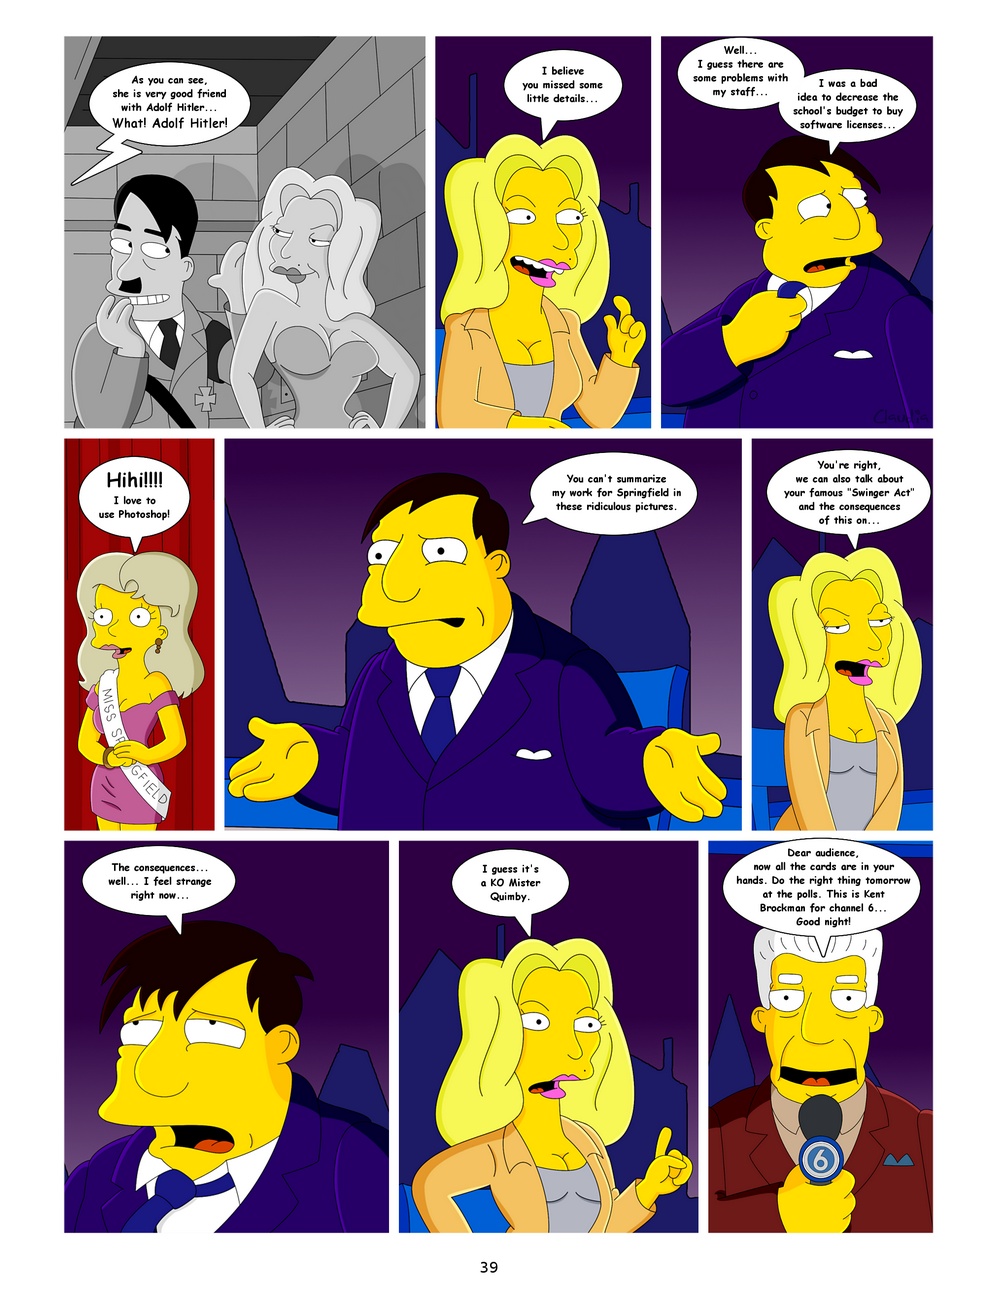 podbój z Springfield część 3